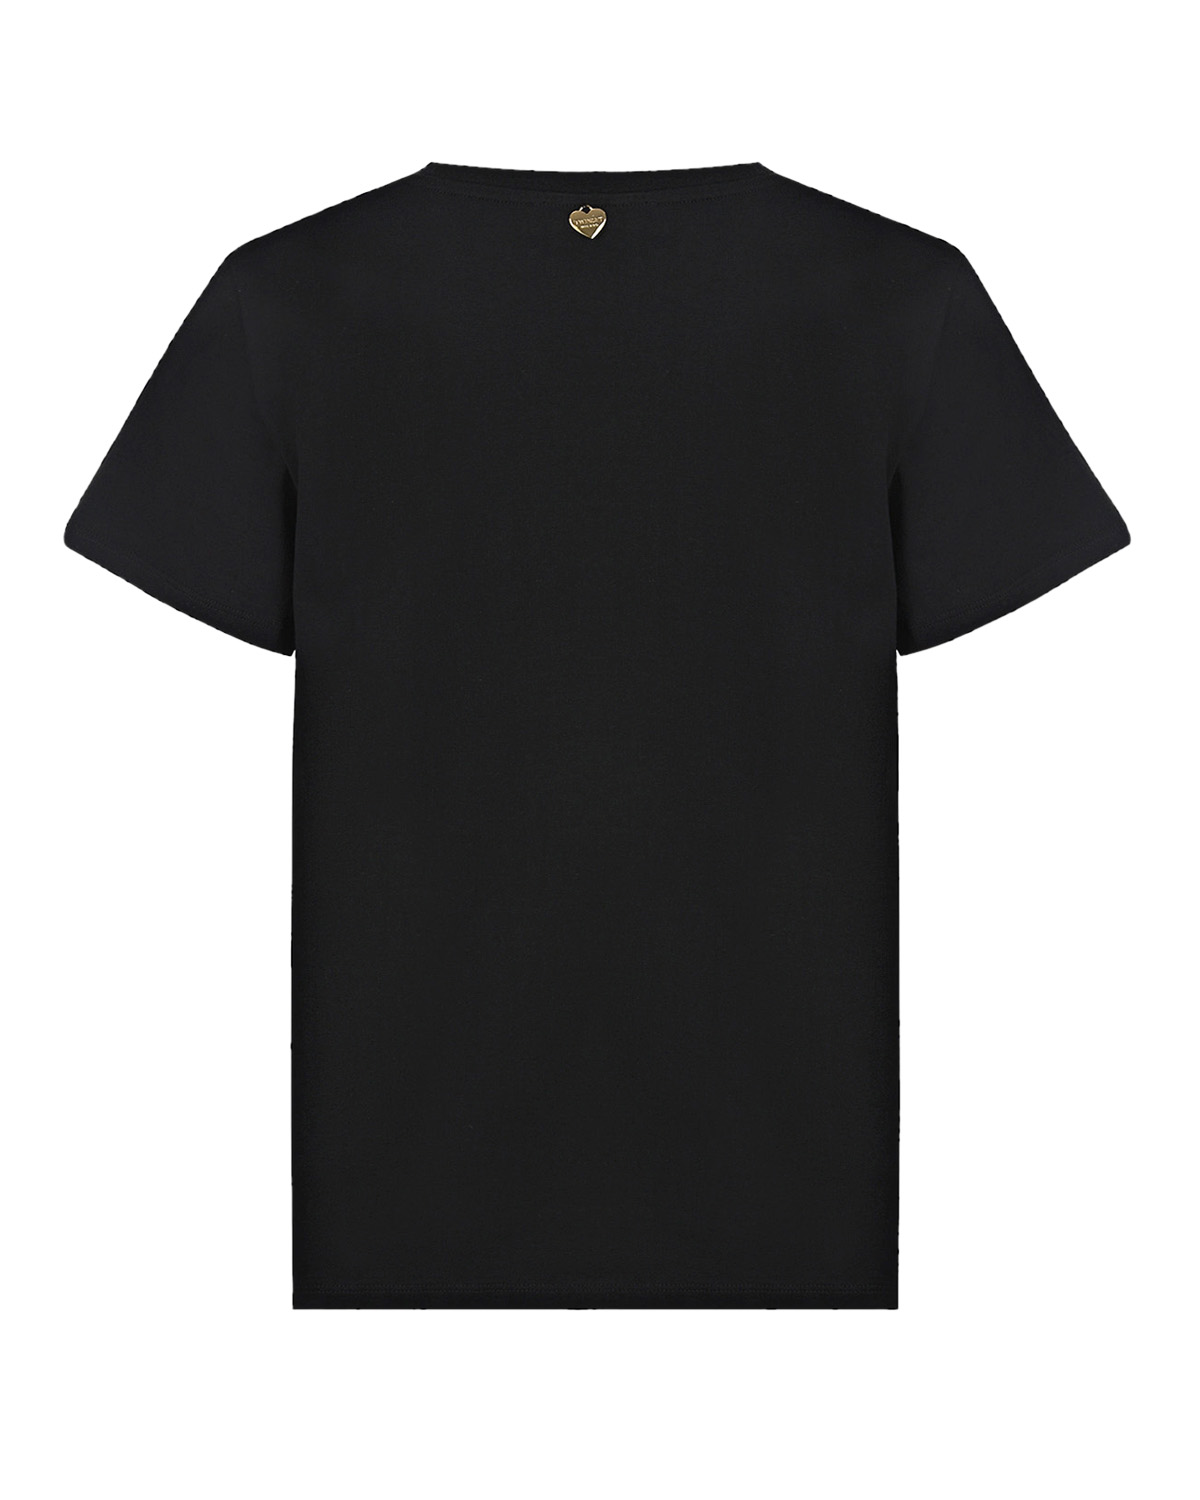 Черная футболка с надписью "love France" TWINSET, размер 40, цвет черный - фото 5